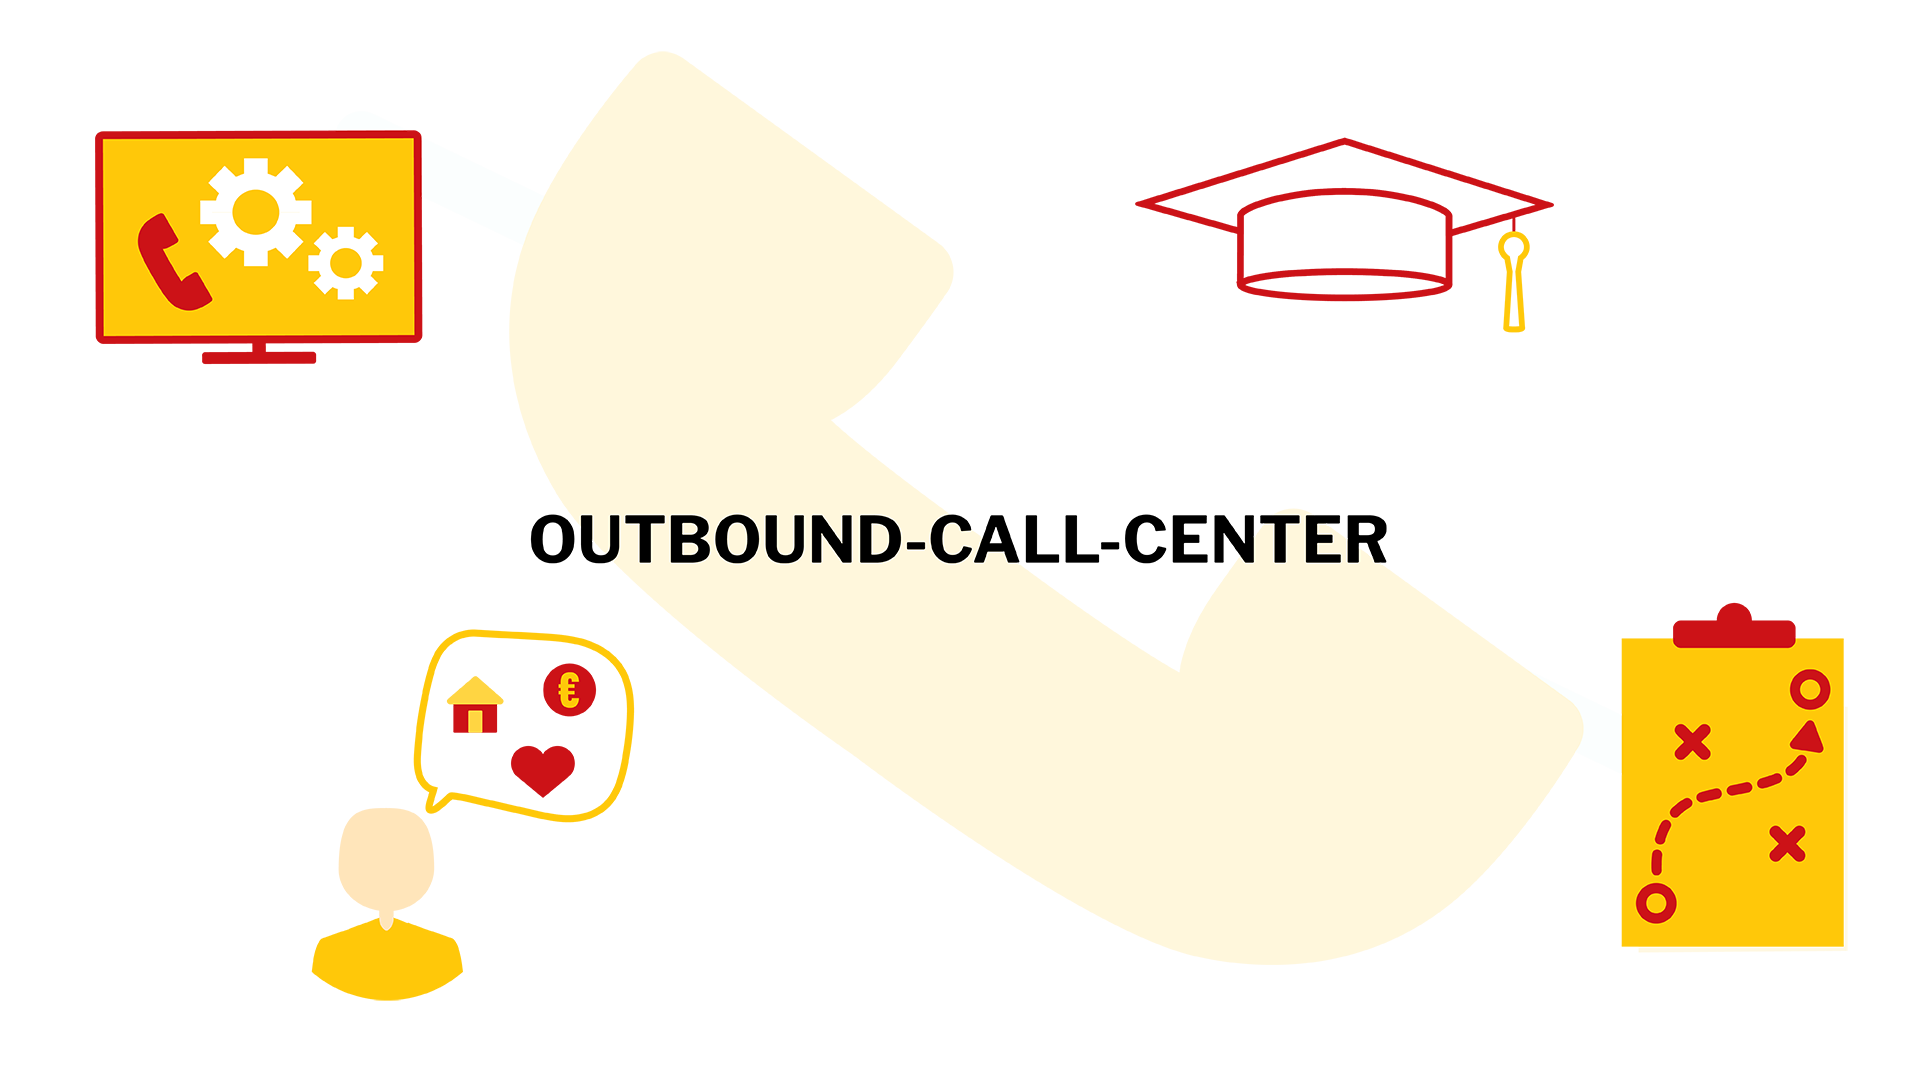 Oberhalb sind 'Outbound-Call-Center' und 'Outcourcing' sowie drei gelbe Daumen nach oben abgebildet, während darunter jeweils mit gelben Haken auf rotem Kreuz darüber ein PC-Bildschirm mit Zahnrädern sowie ein Schreiben, auf dem CV steht und vor dem eine gelbe Lupe zu sehen ist, und ein Doktor-Hut abgebildet sind.